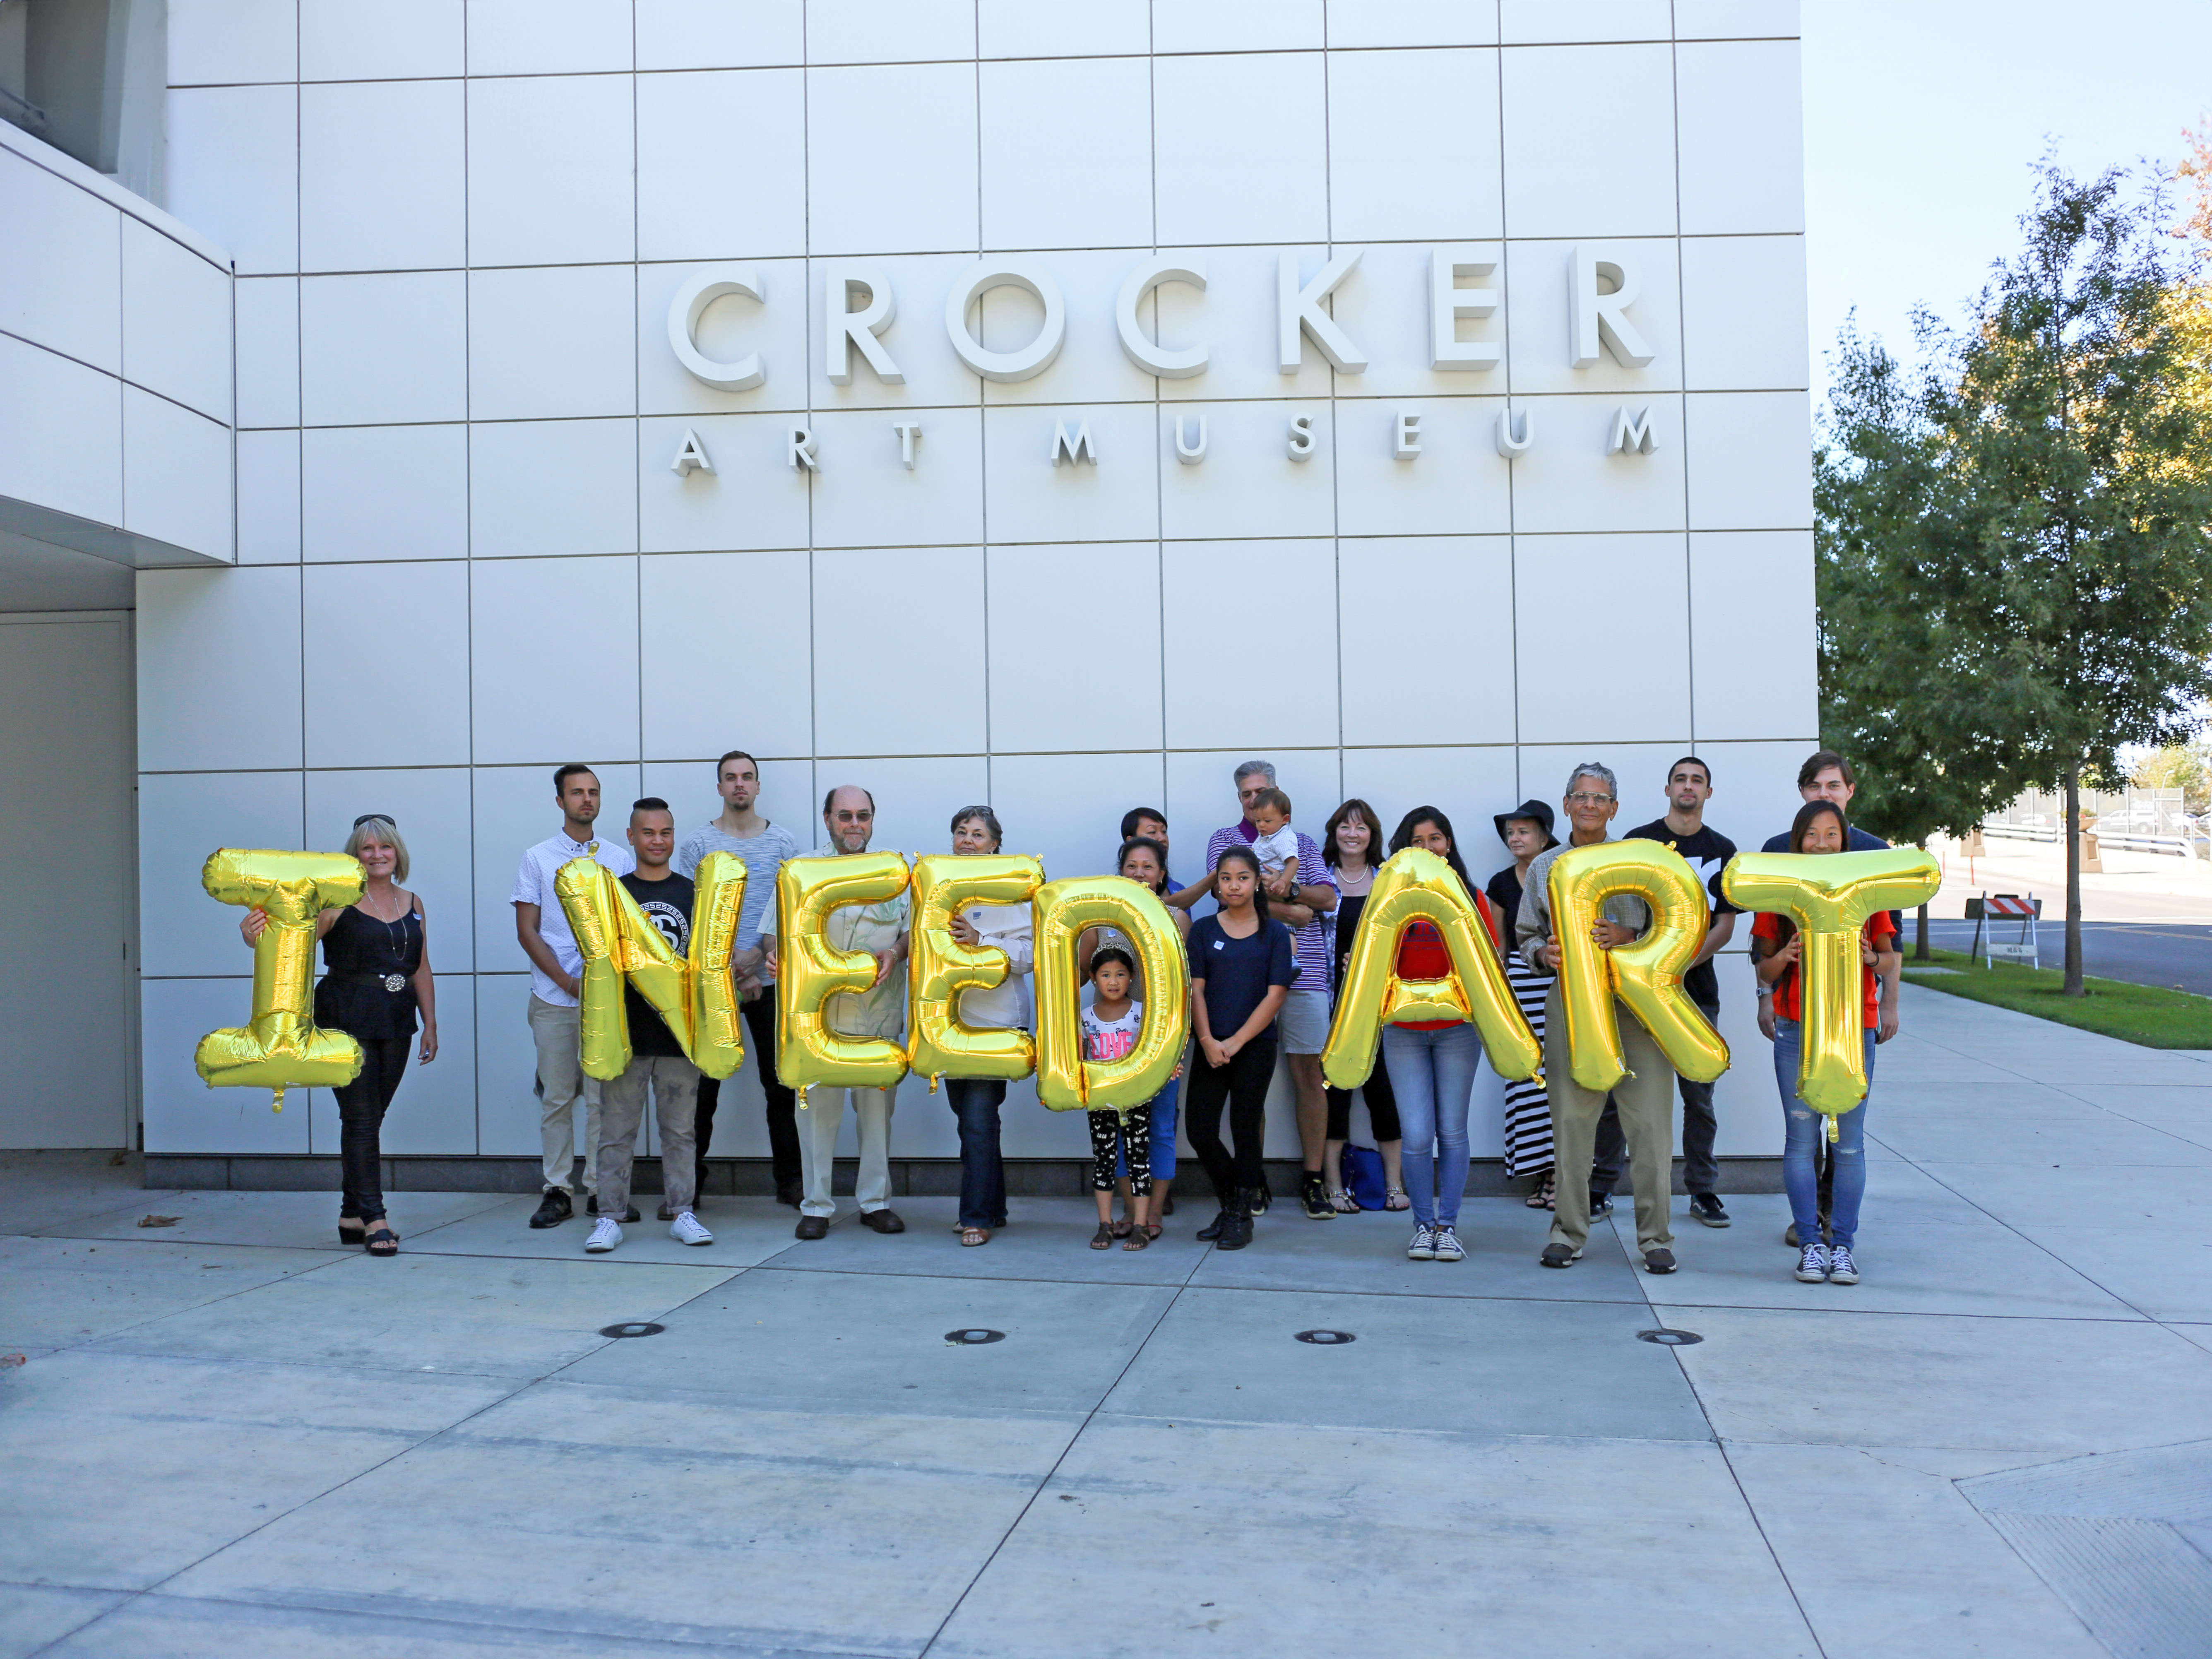 USA, Sacramento, Crocker Art Museum - I need art, Silence Was Golden, gold balloons